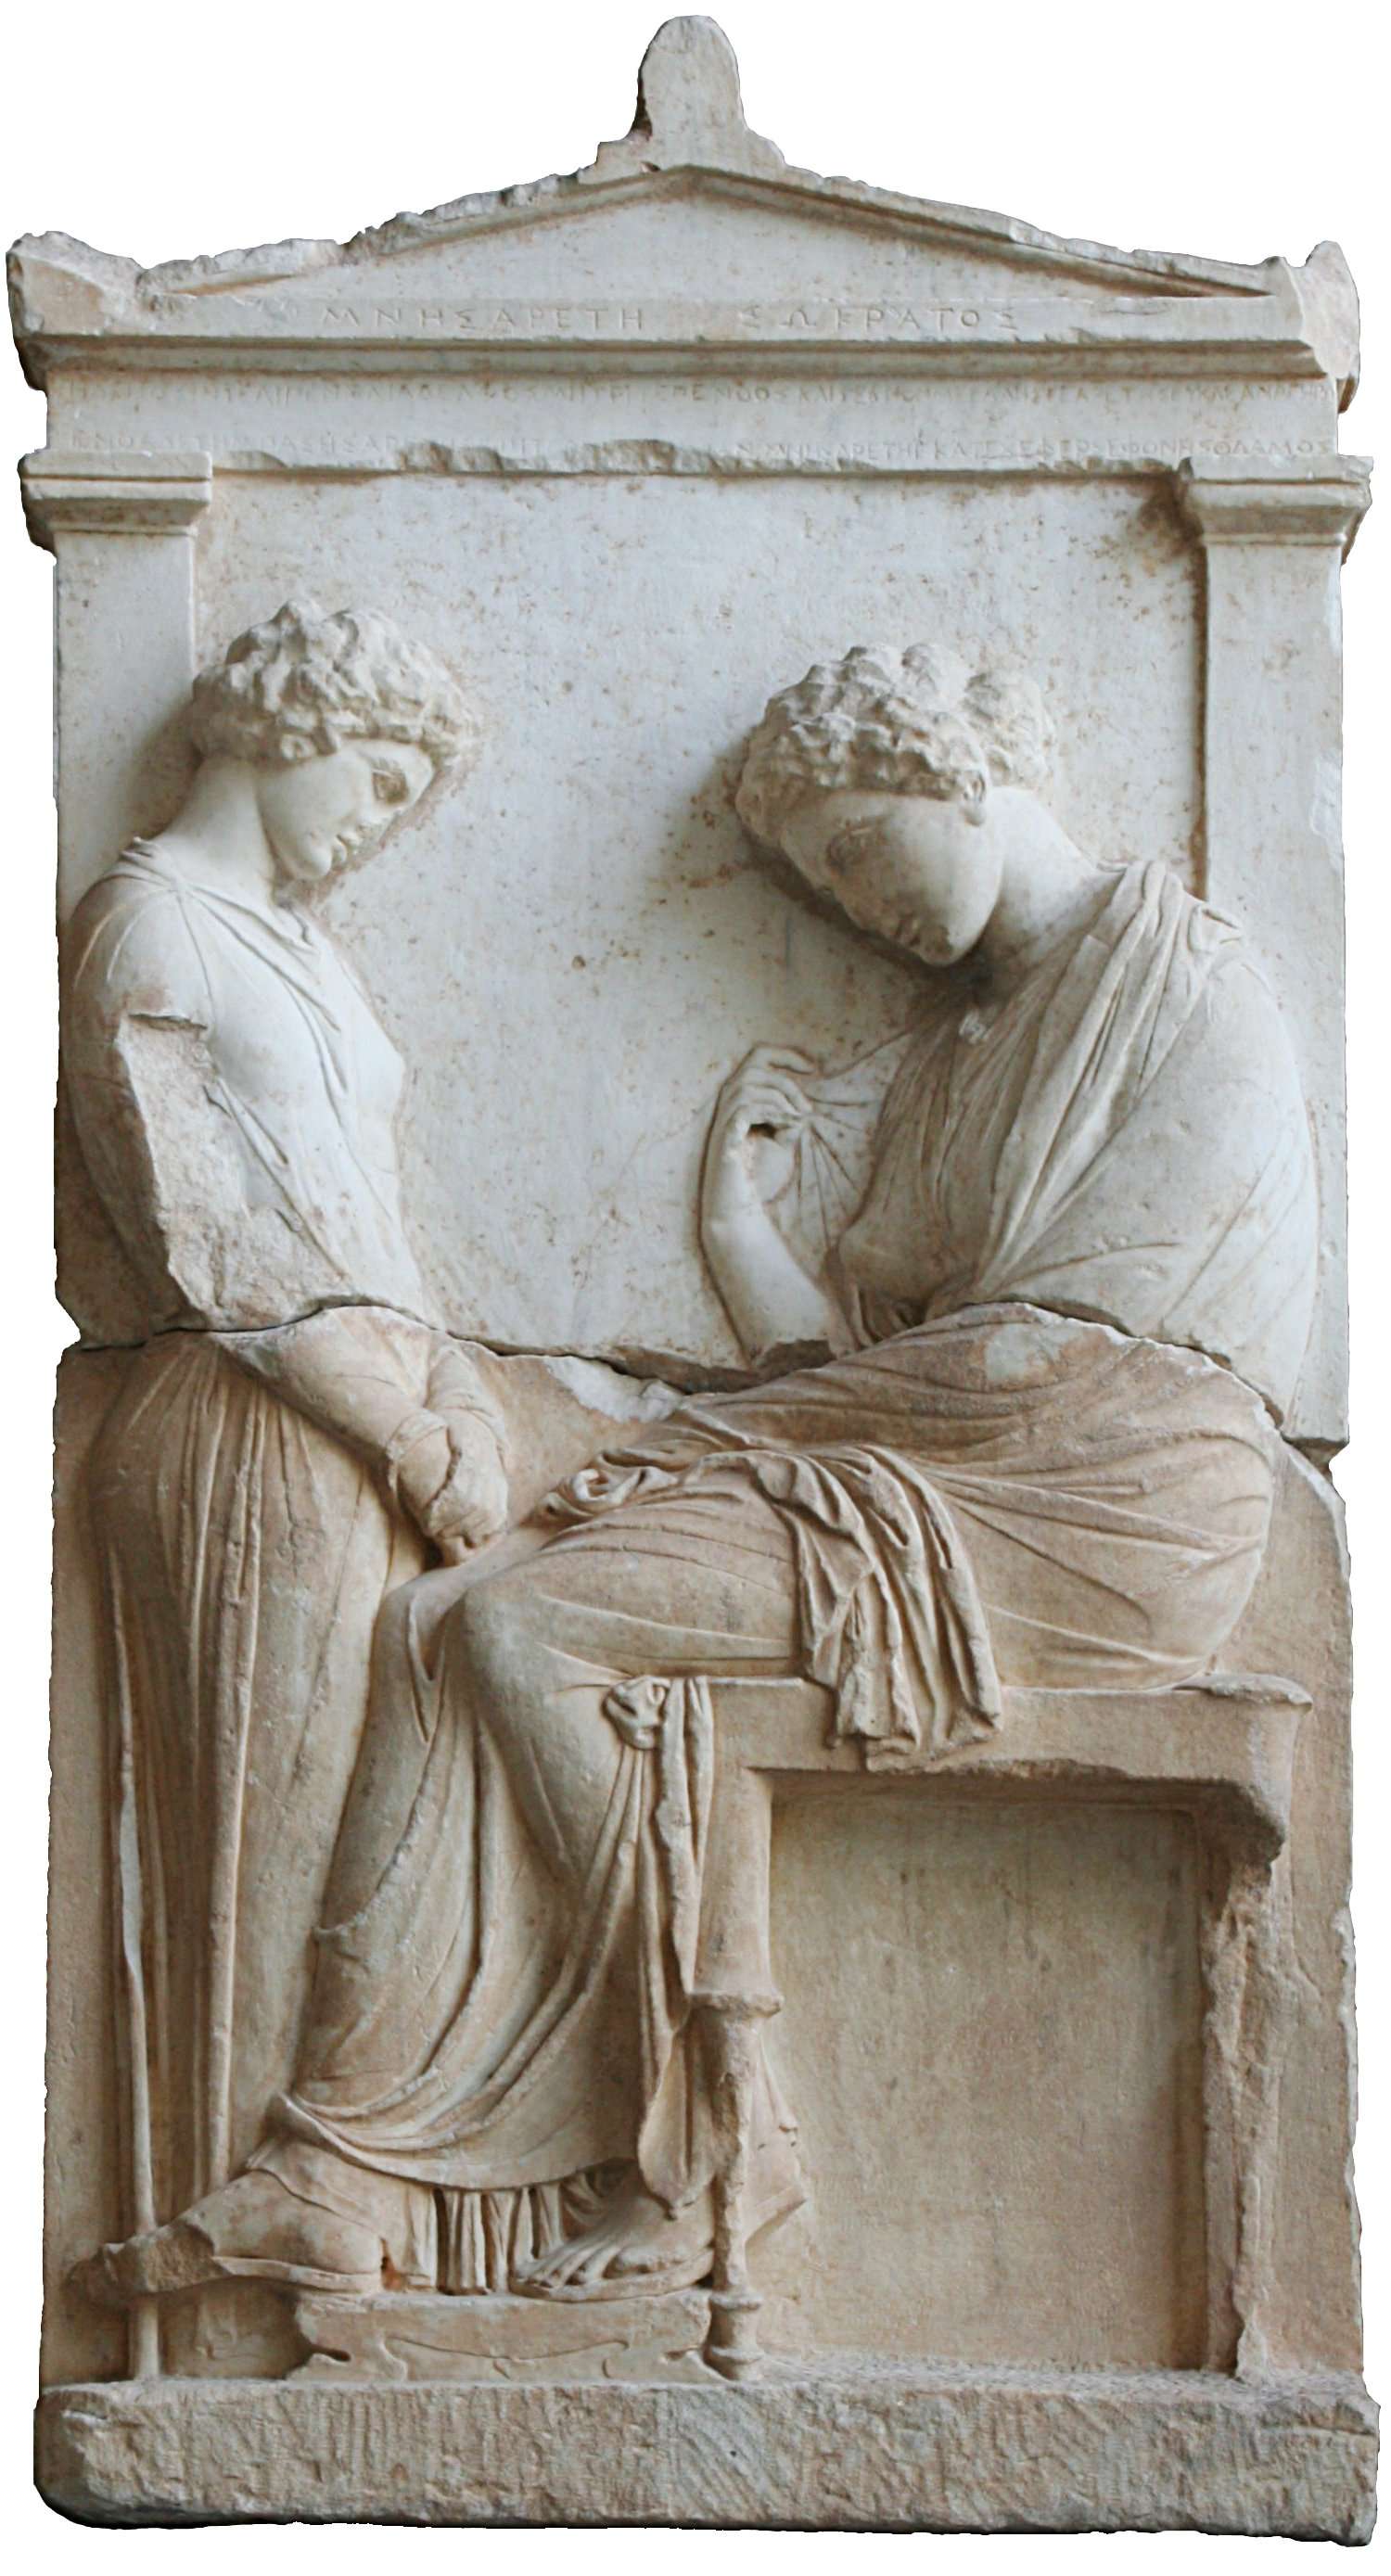 Ταφική στήλη της Μνησαρέτης, όπου νεαρή υπηρέτρια κοιτάζει την αποθανούσα κυρία της. Αττική, περ. 380 π.χ., Γλυπτοθήκη του Μονάχου